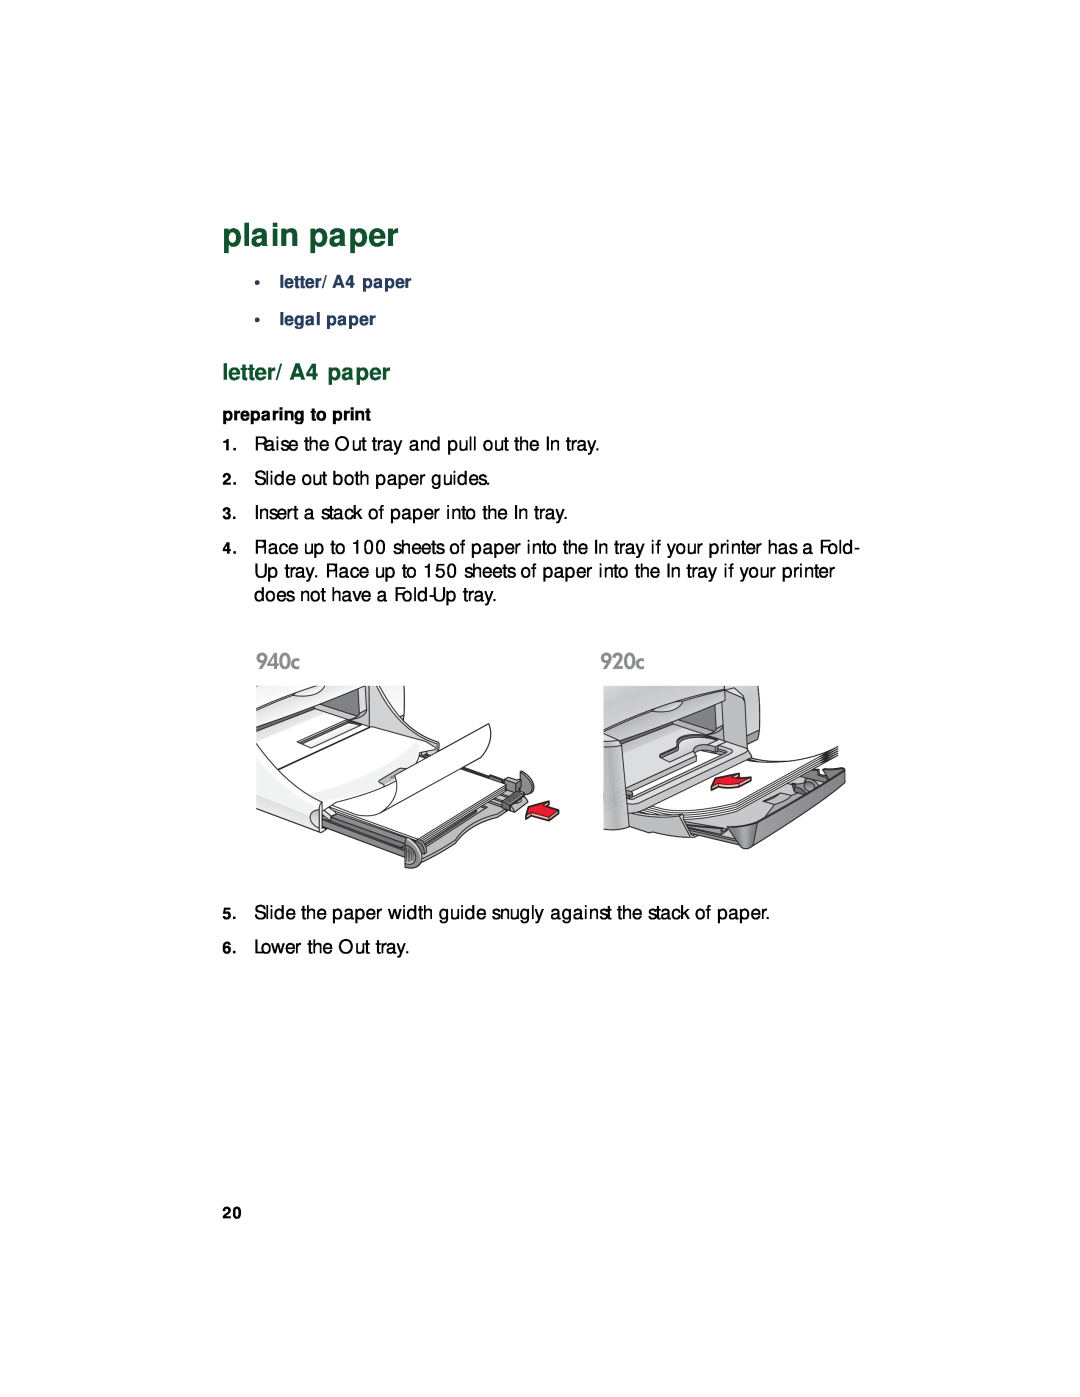 HP 948c, 920c, 940c manual plain paper, letter/A4 paper legal paper 